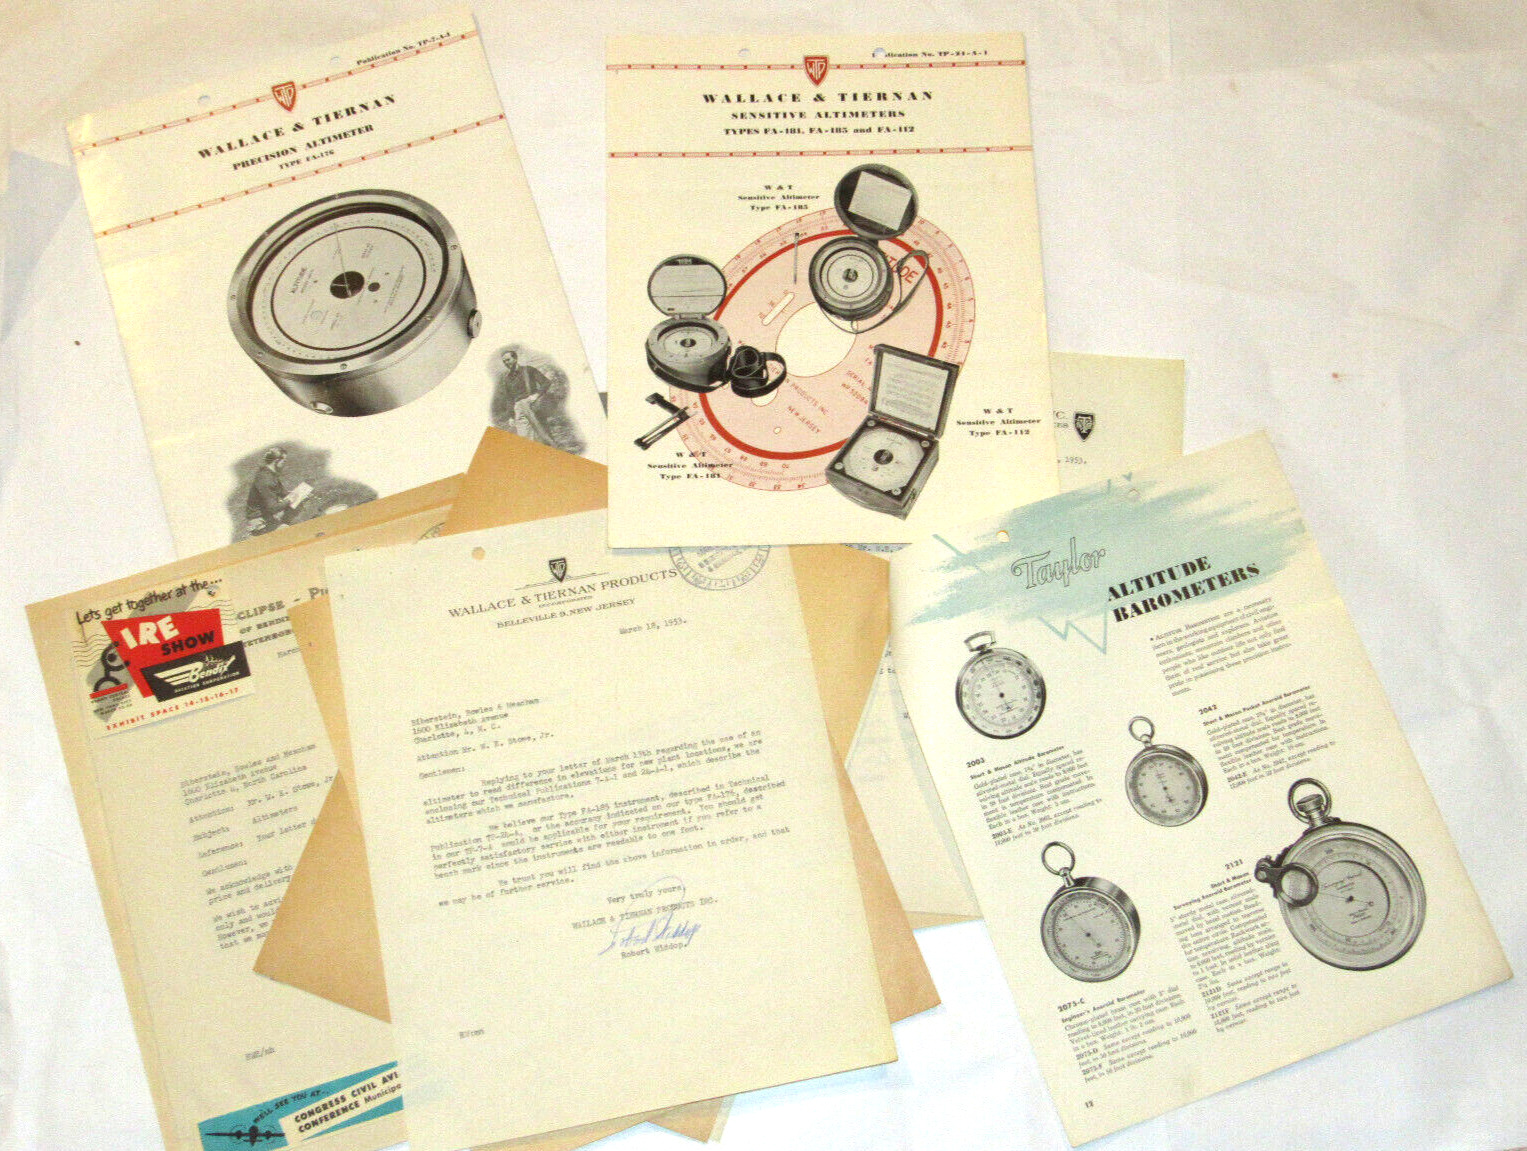 VTG 1953 WALLACE & TIERNAN/TAYLOR ALTIMETER BROCHURES/PRICES FA-181/185 & MORE